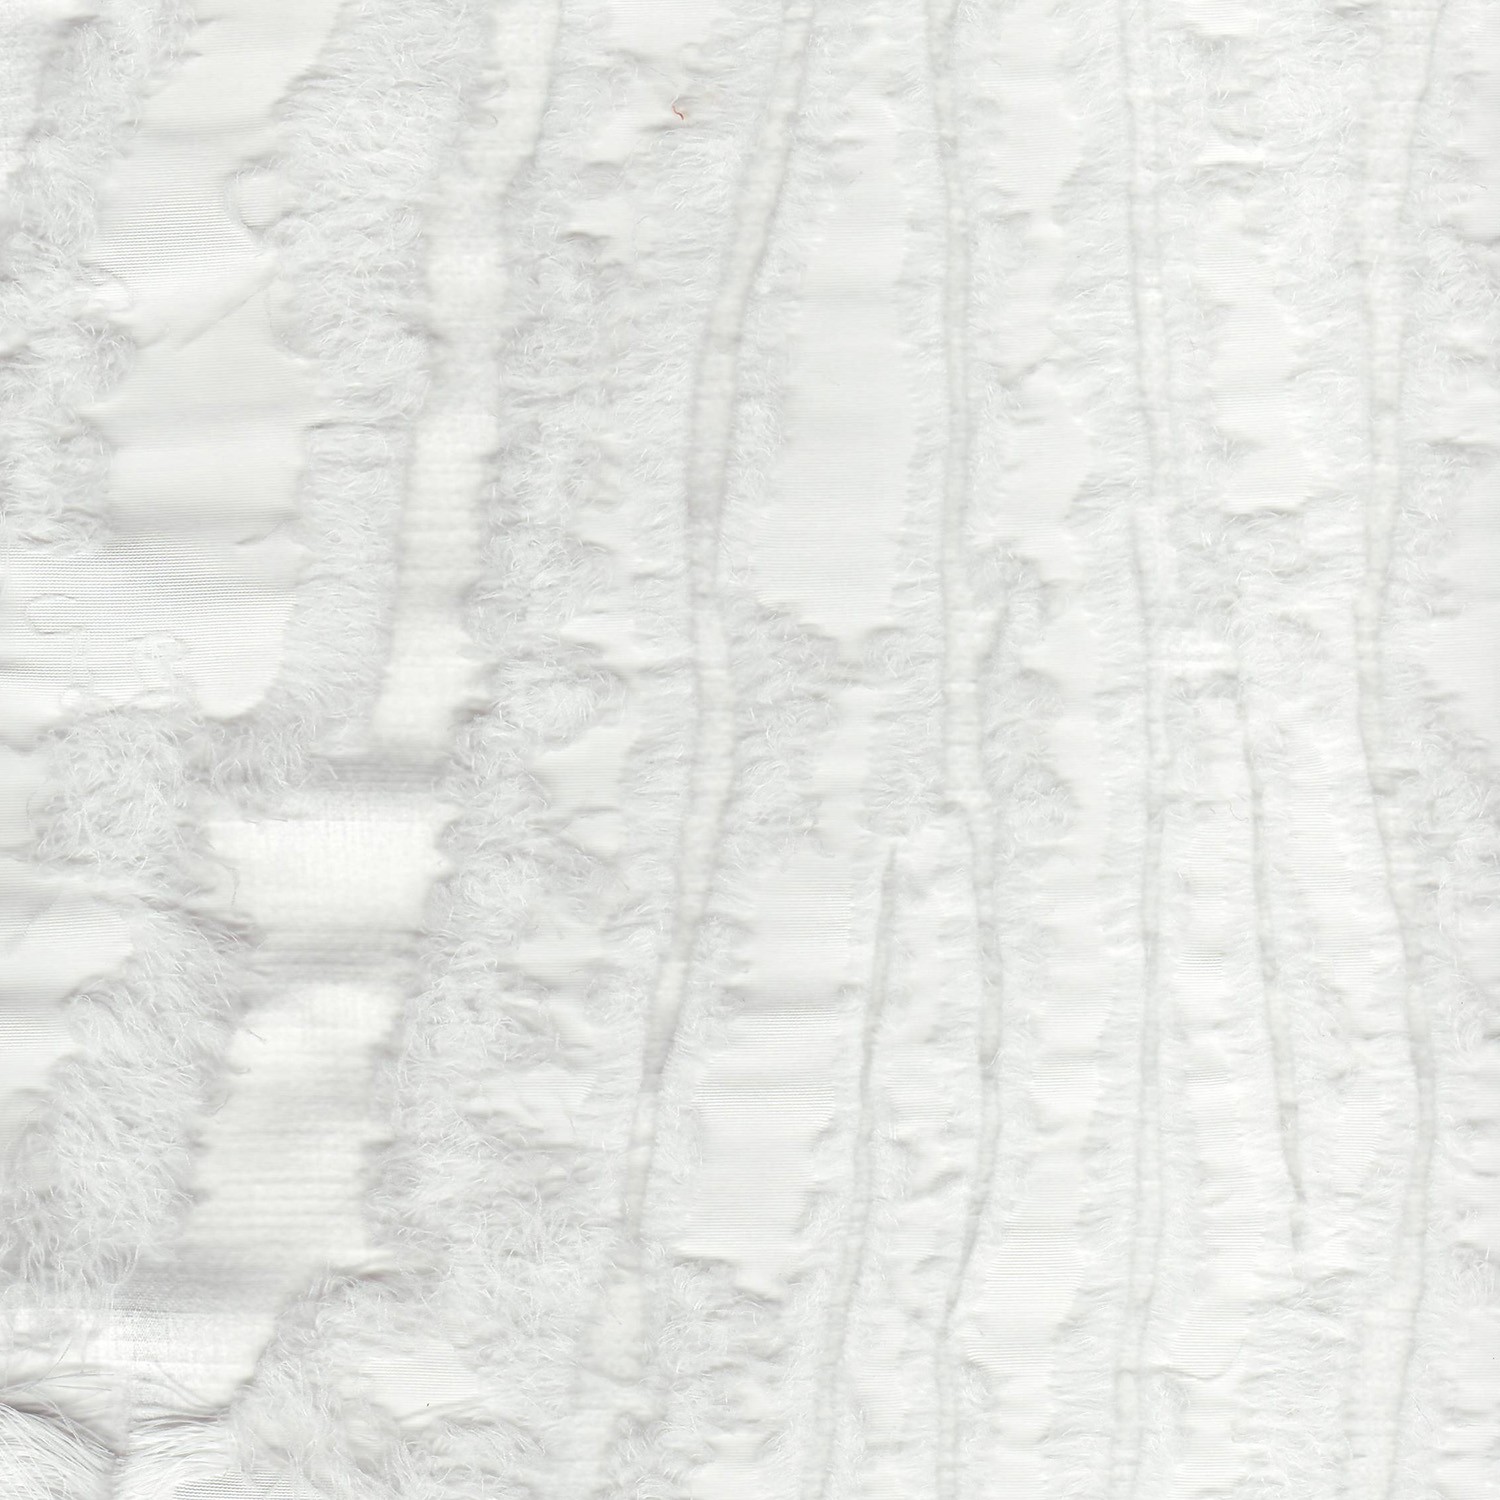 P-Frills/White – Fabric